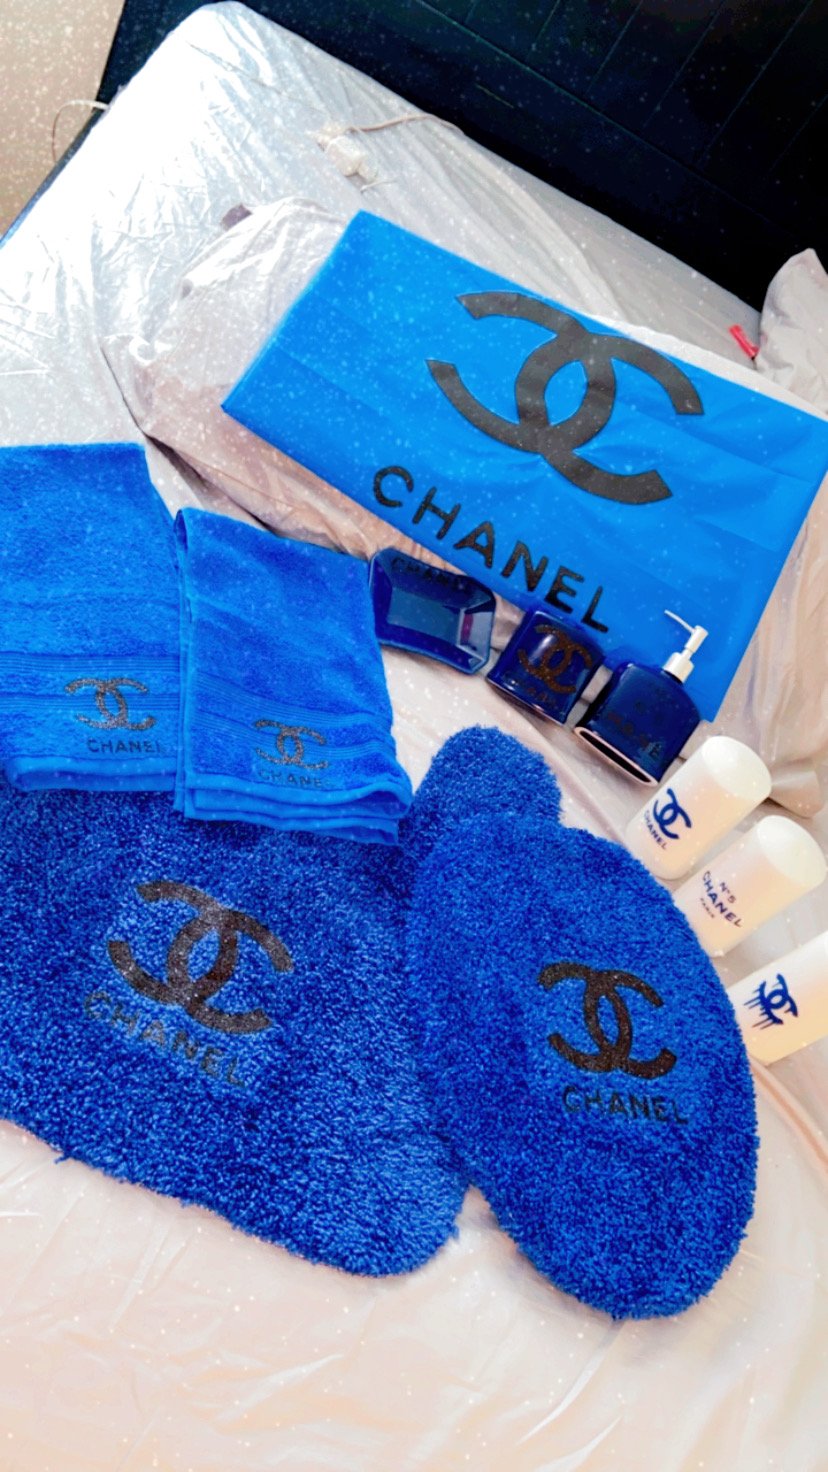 CHANEL, Bath, Chanel Bath Towel Sets